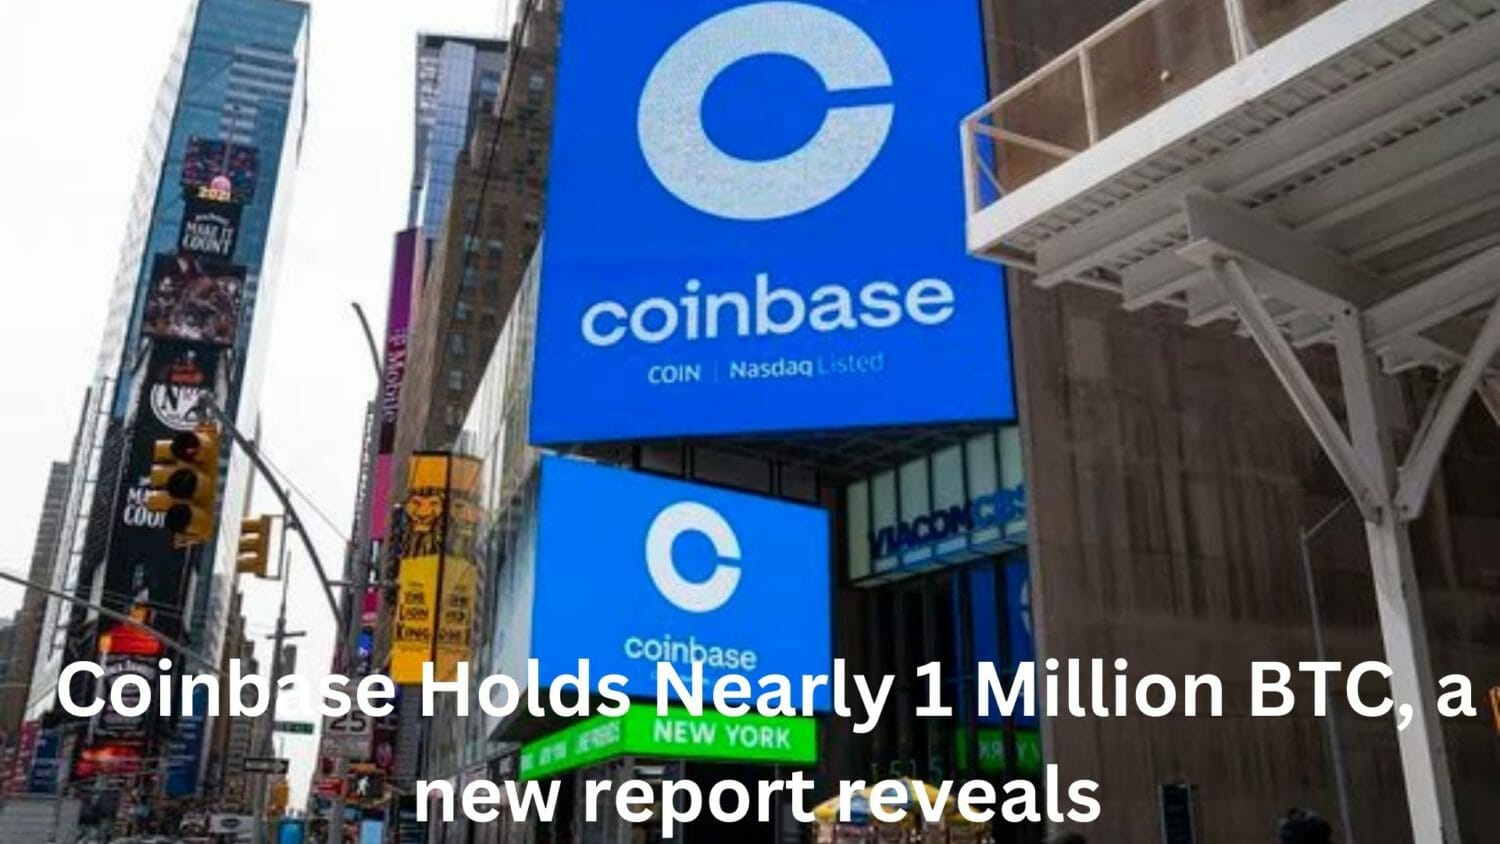 Згідно з новим звітом, Coinbase володіє майже 1 мільйоном BTC